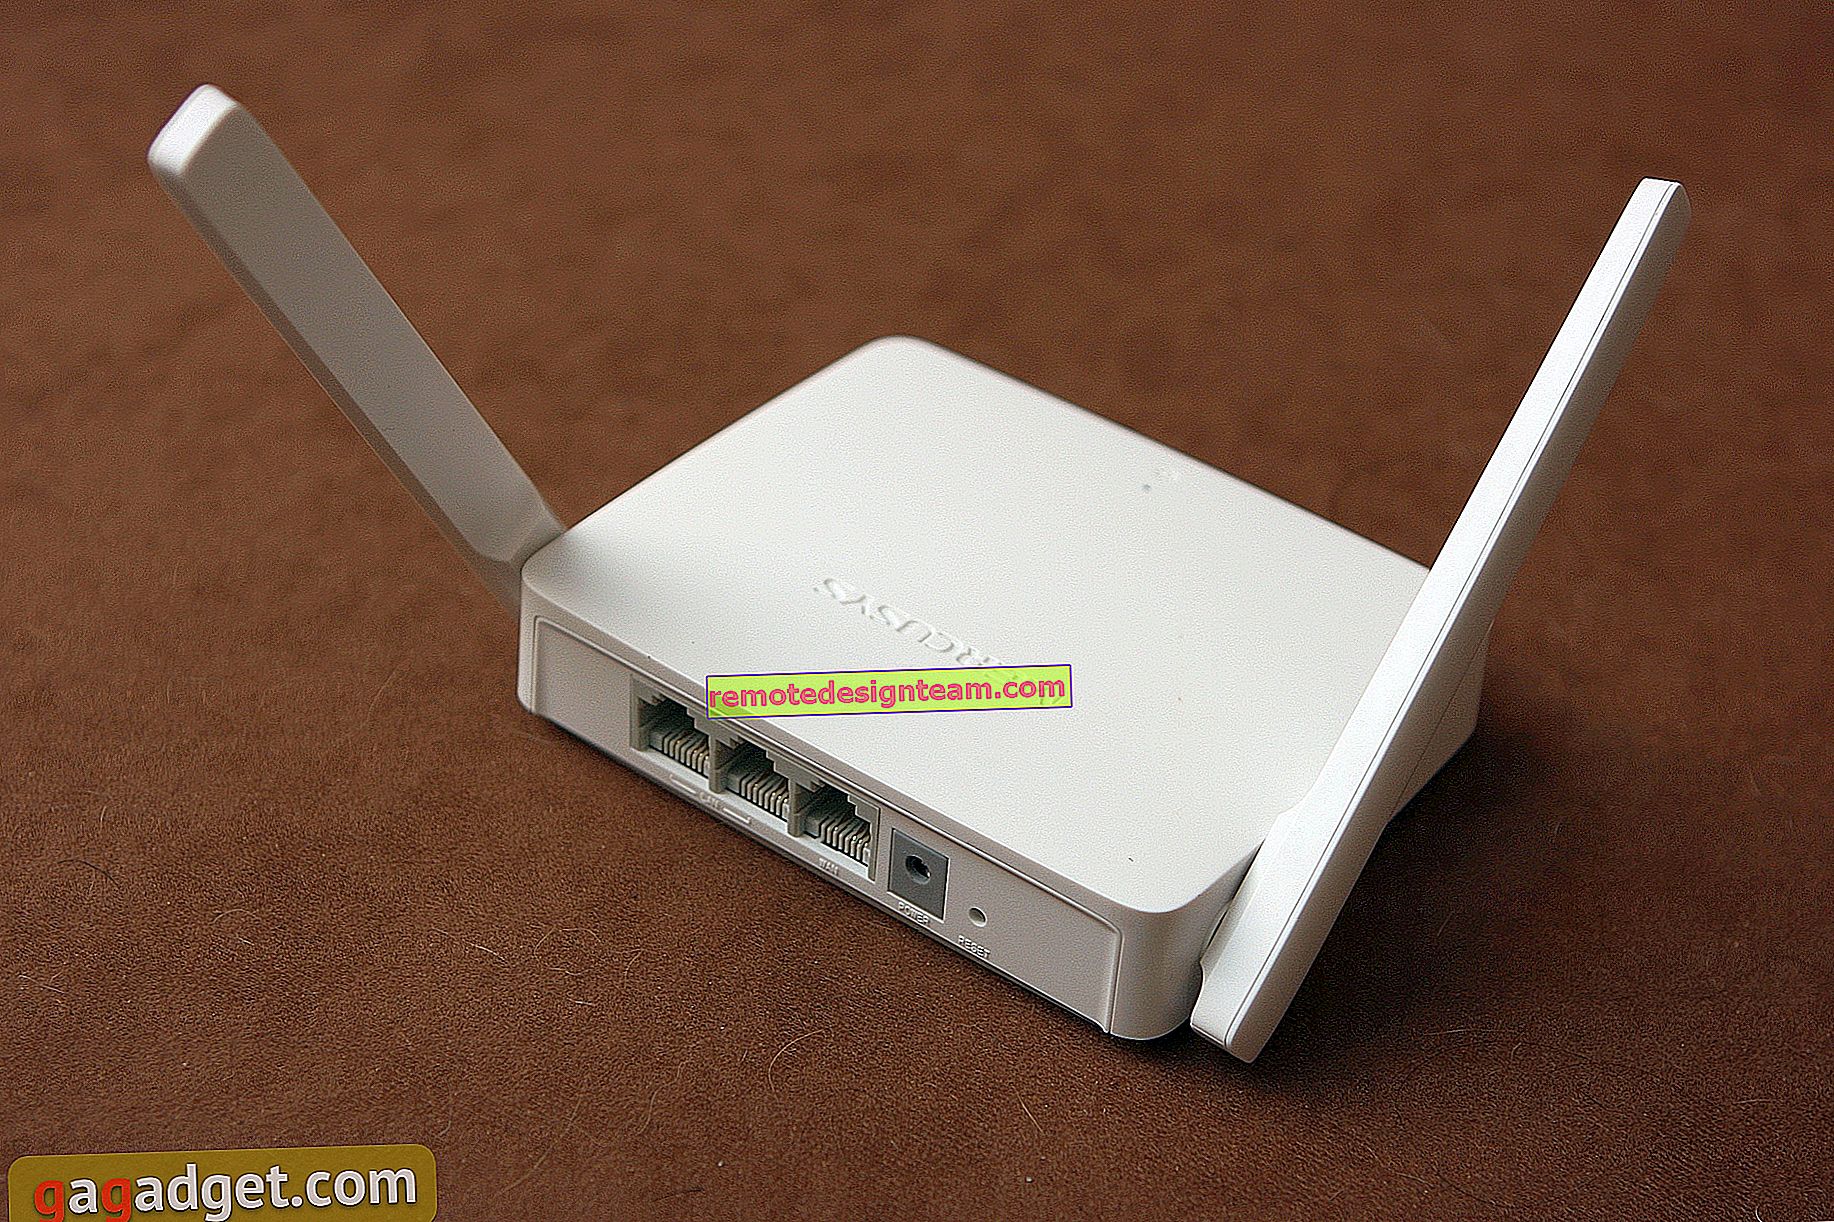 Kajian semula penghala Wi-Fi Mercusys MW301R yang berpatutan